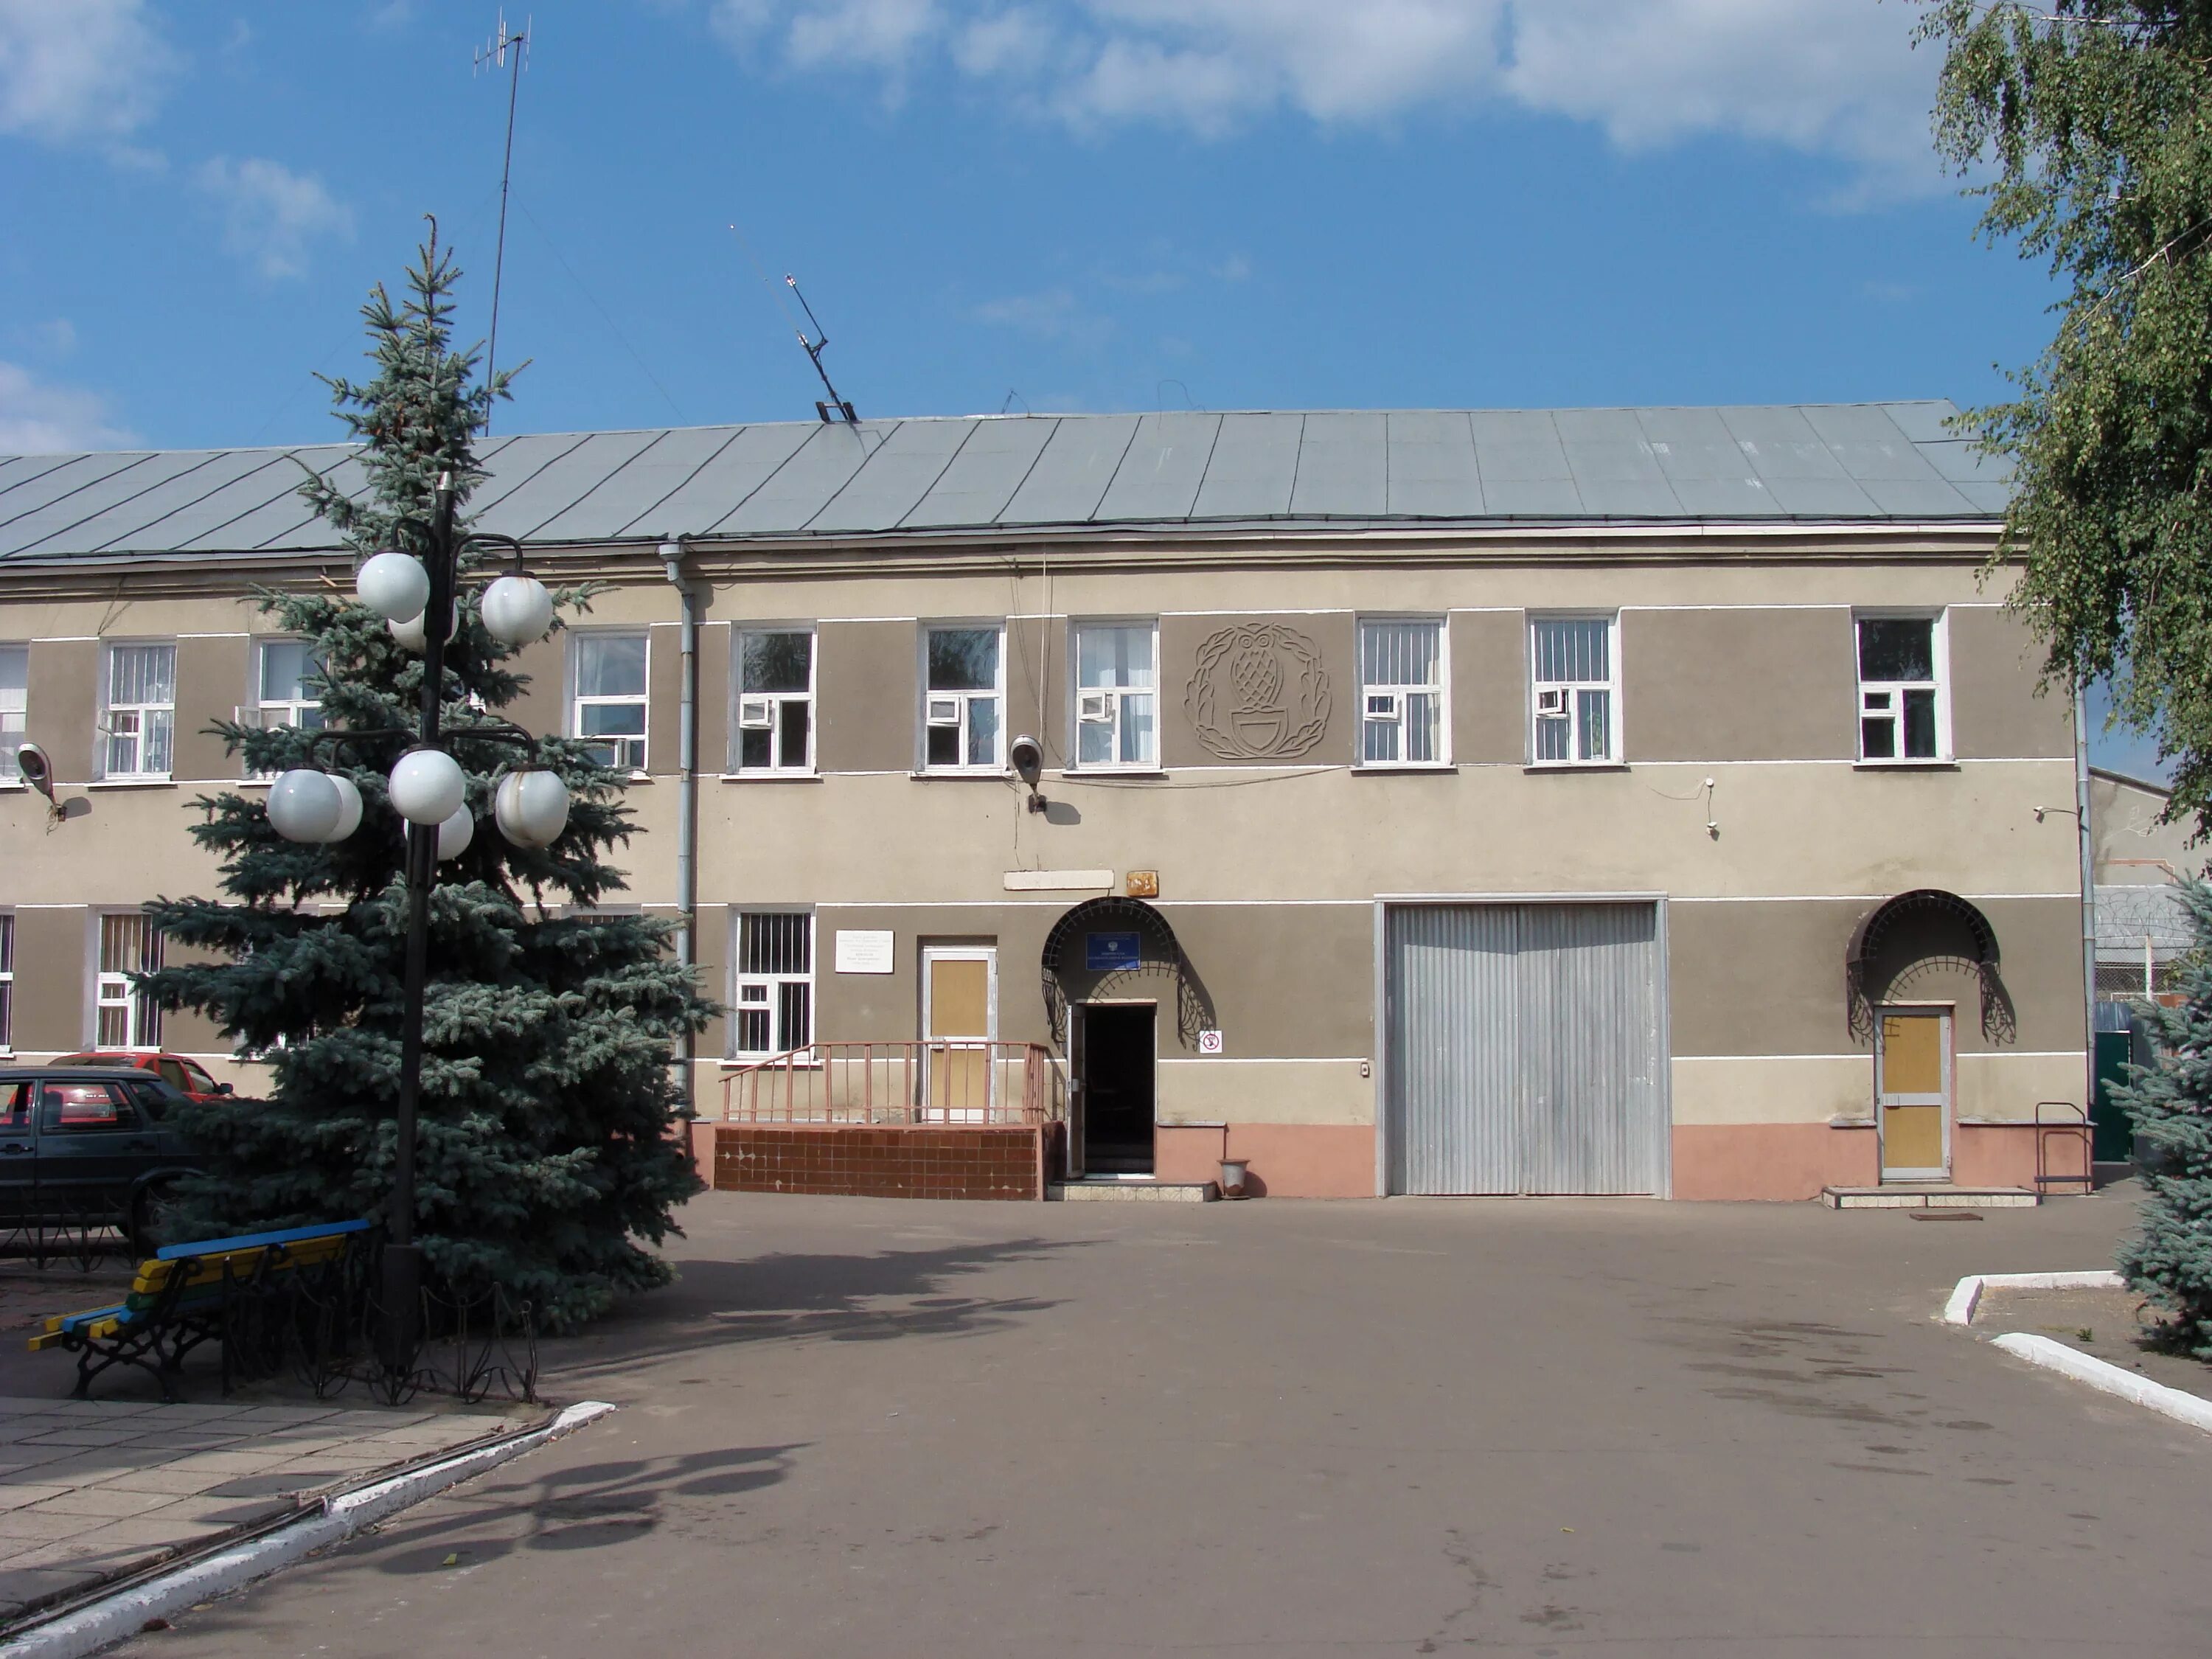 Сайт бобровского суда воронежской области